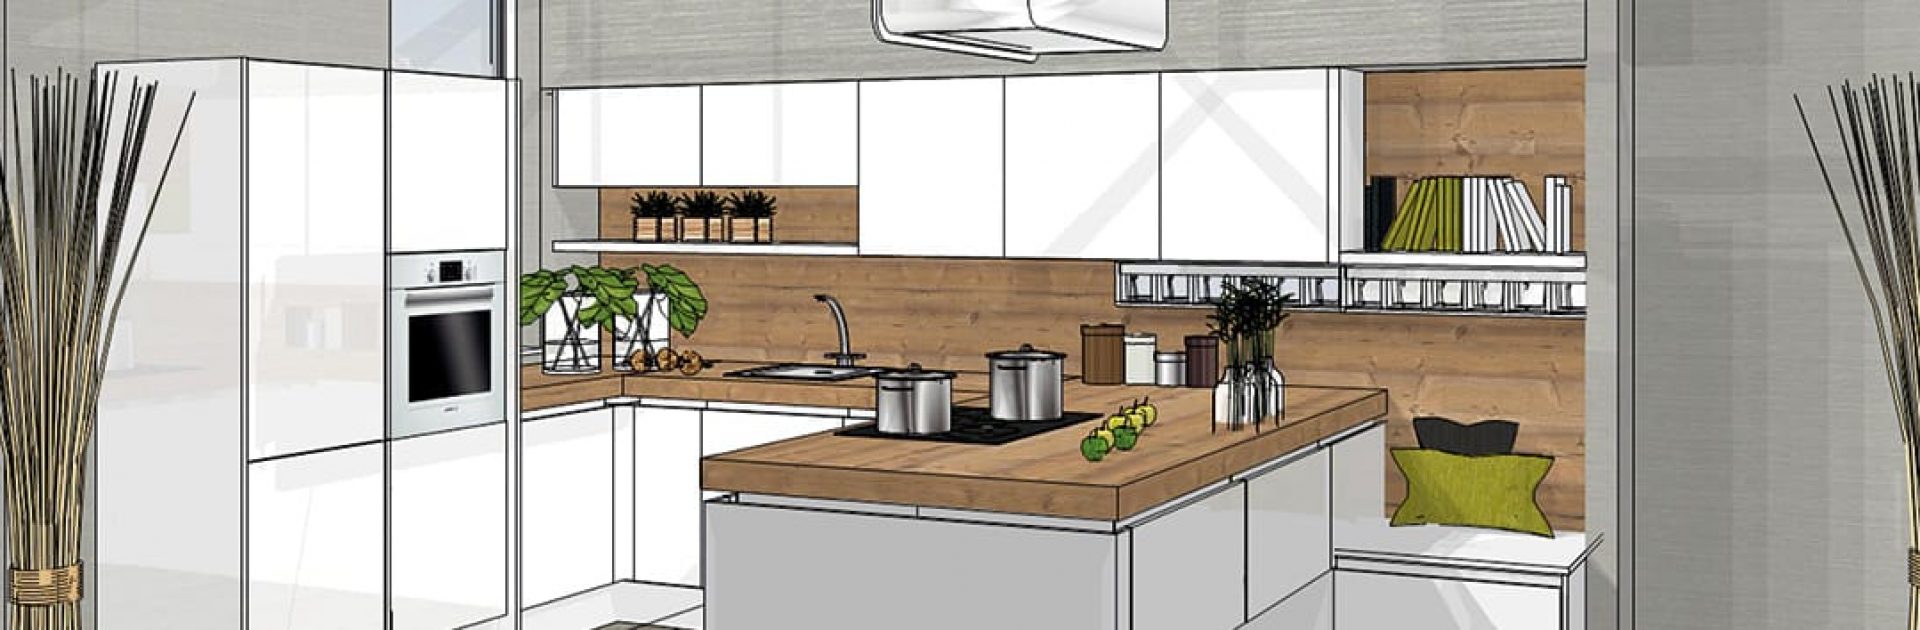 Keuken ontwerpen in 3D met KeukenCreator